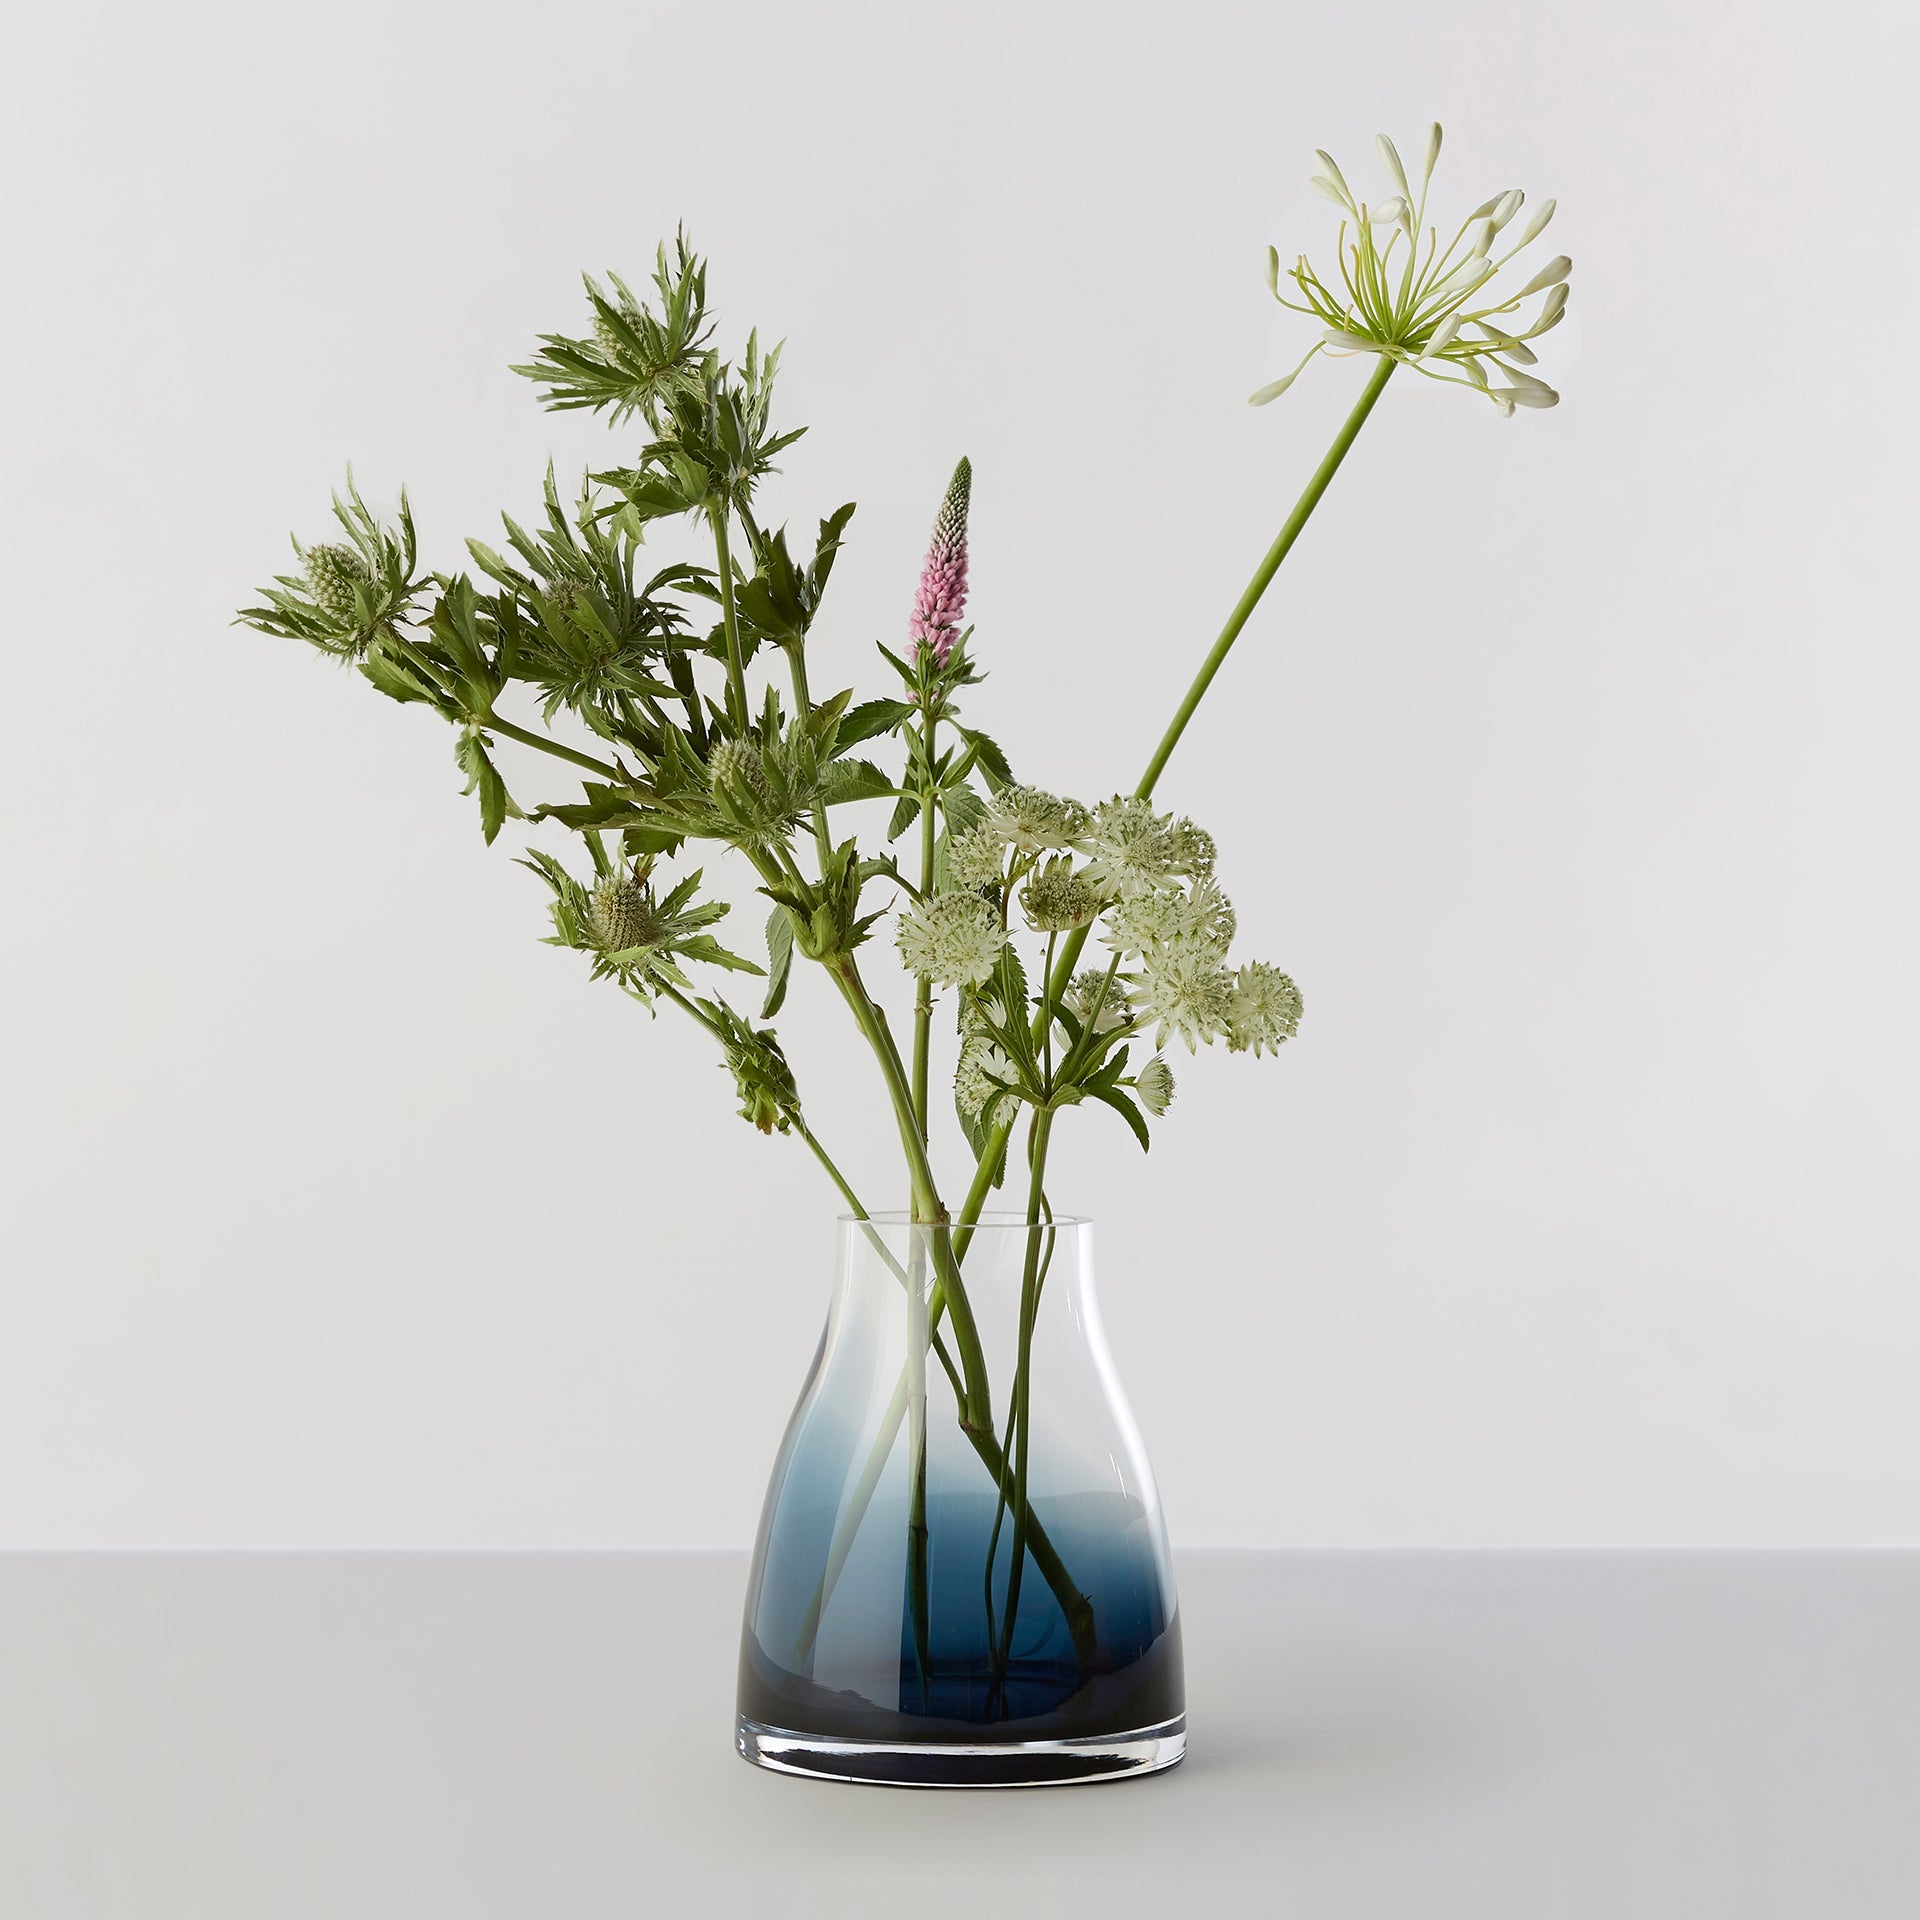 Billede af Flower Vase no. 2 - Indigo blue